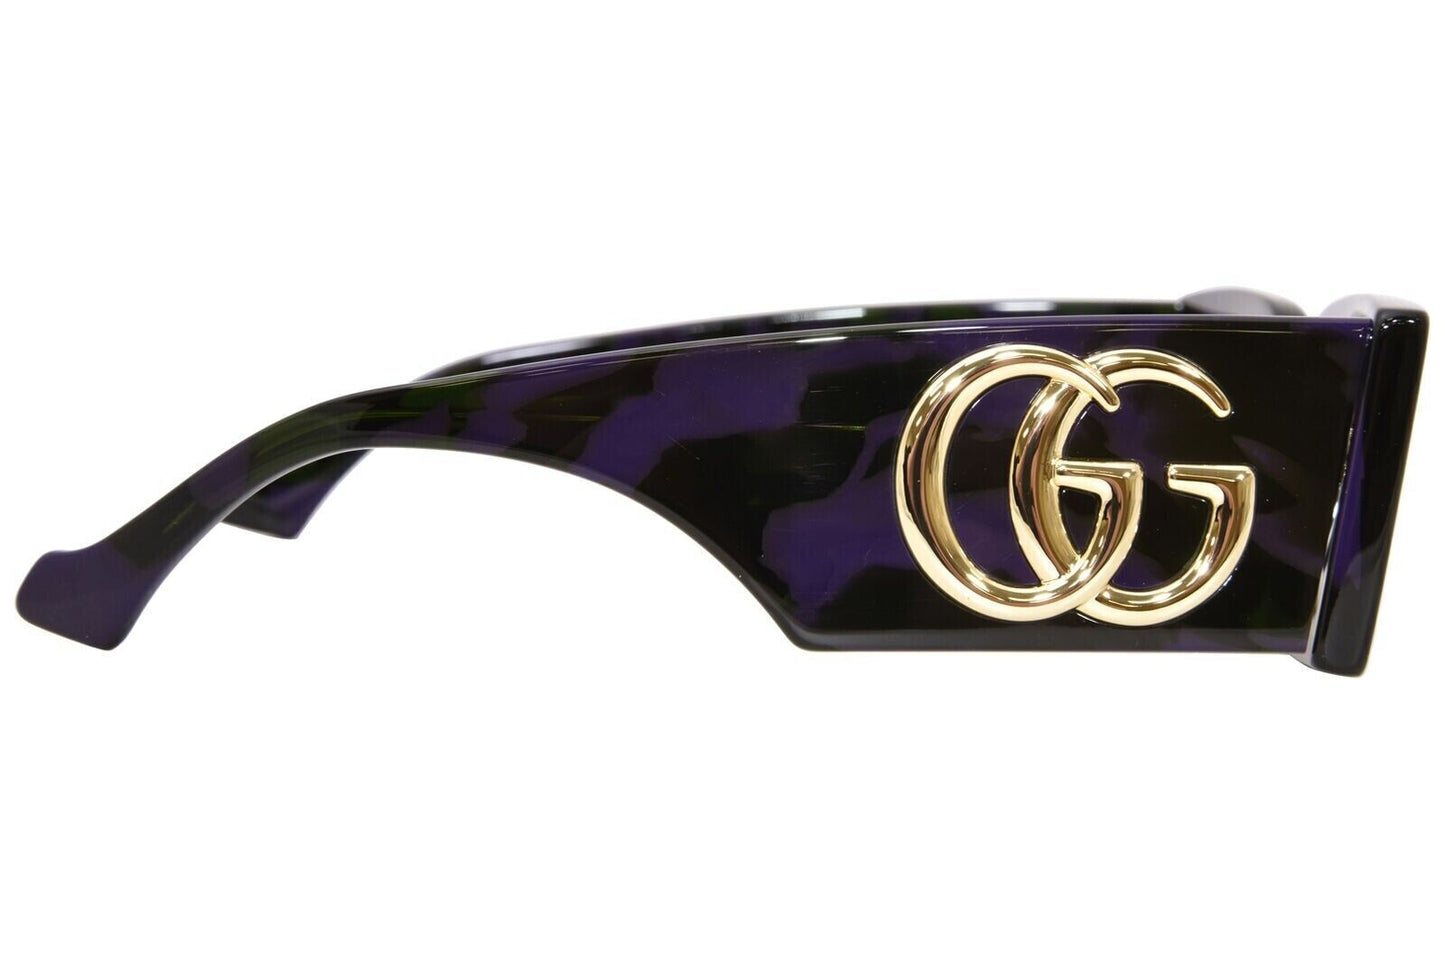 Gucci GG1425S-003-53 53mm New Sunglasses